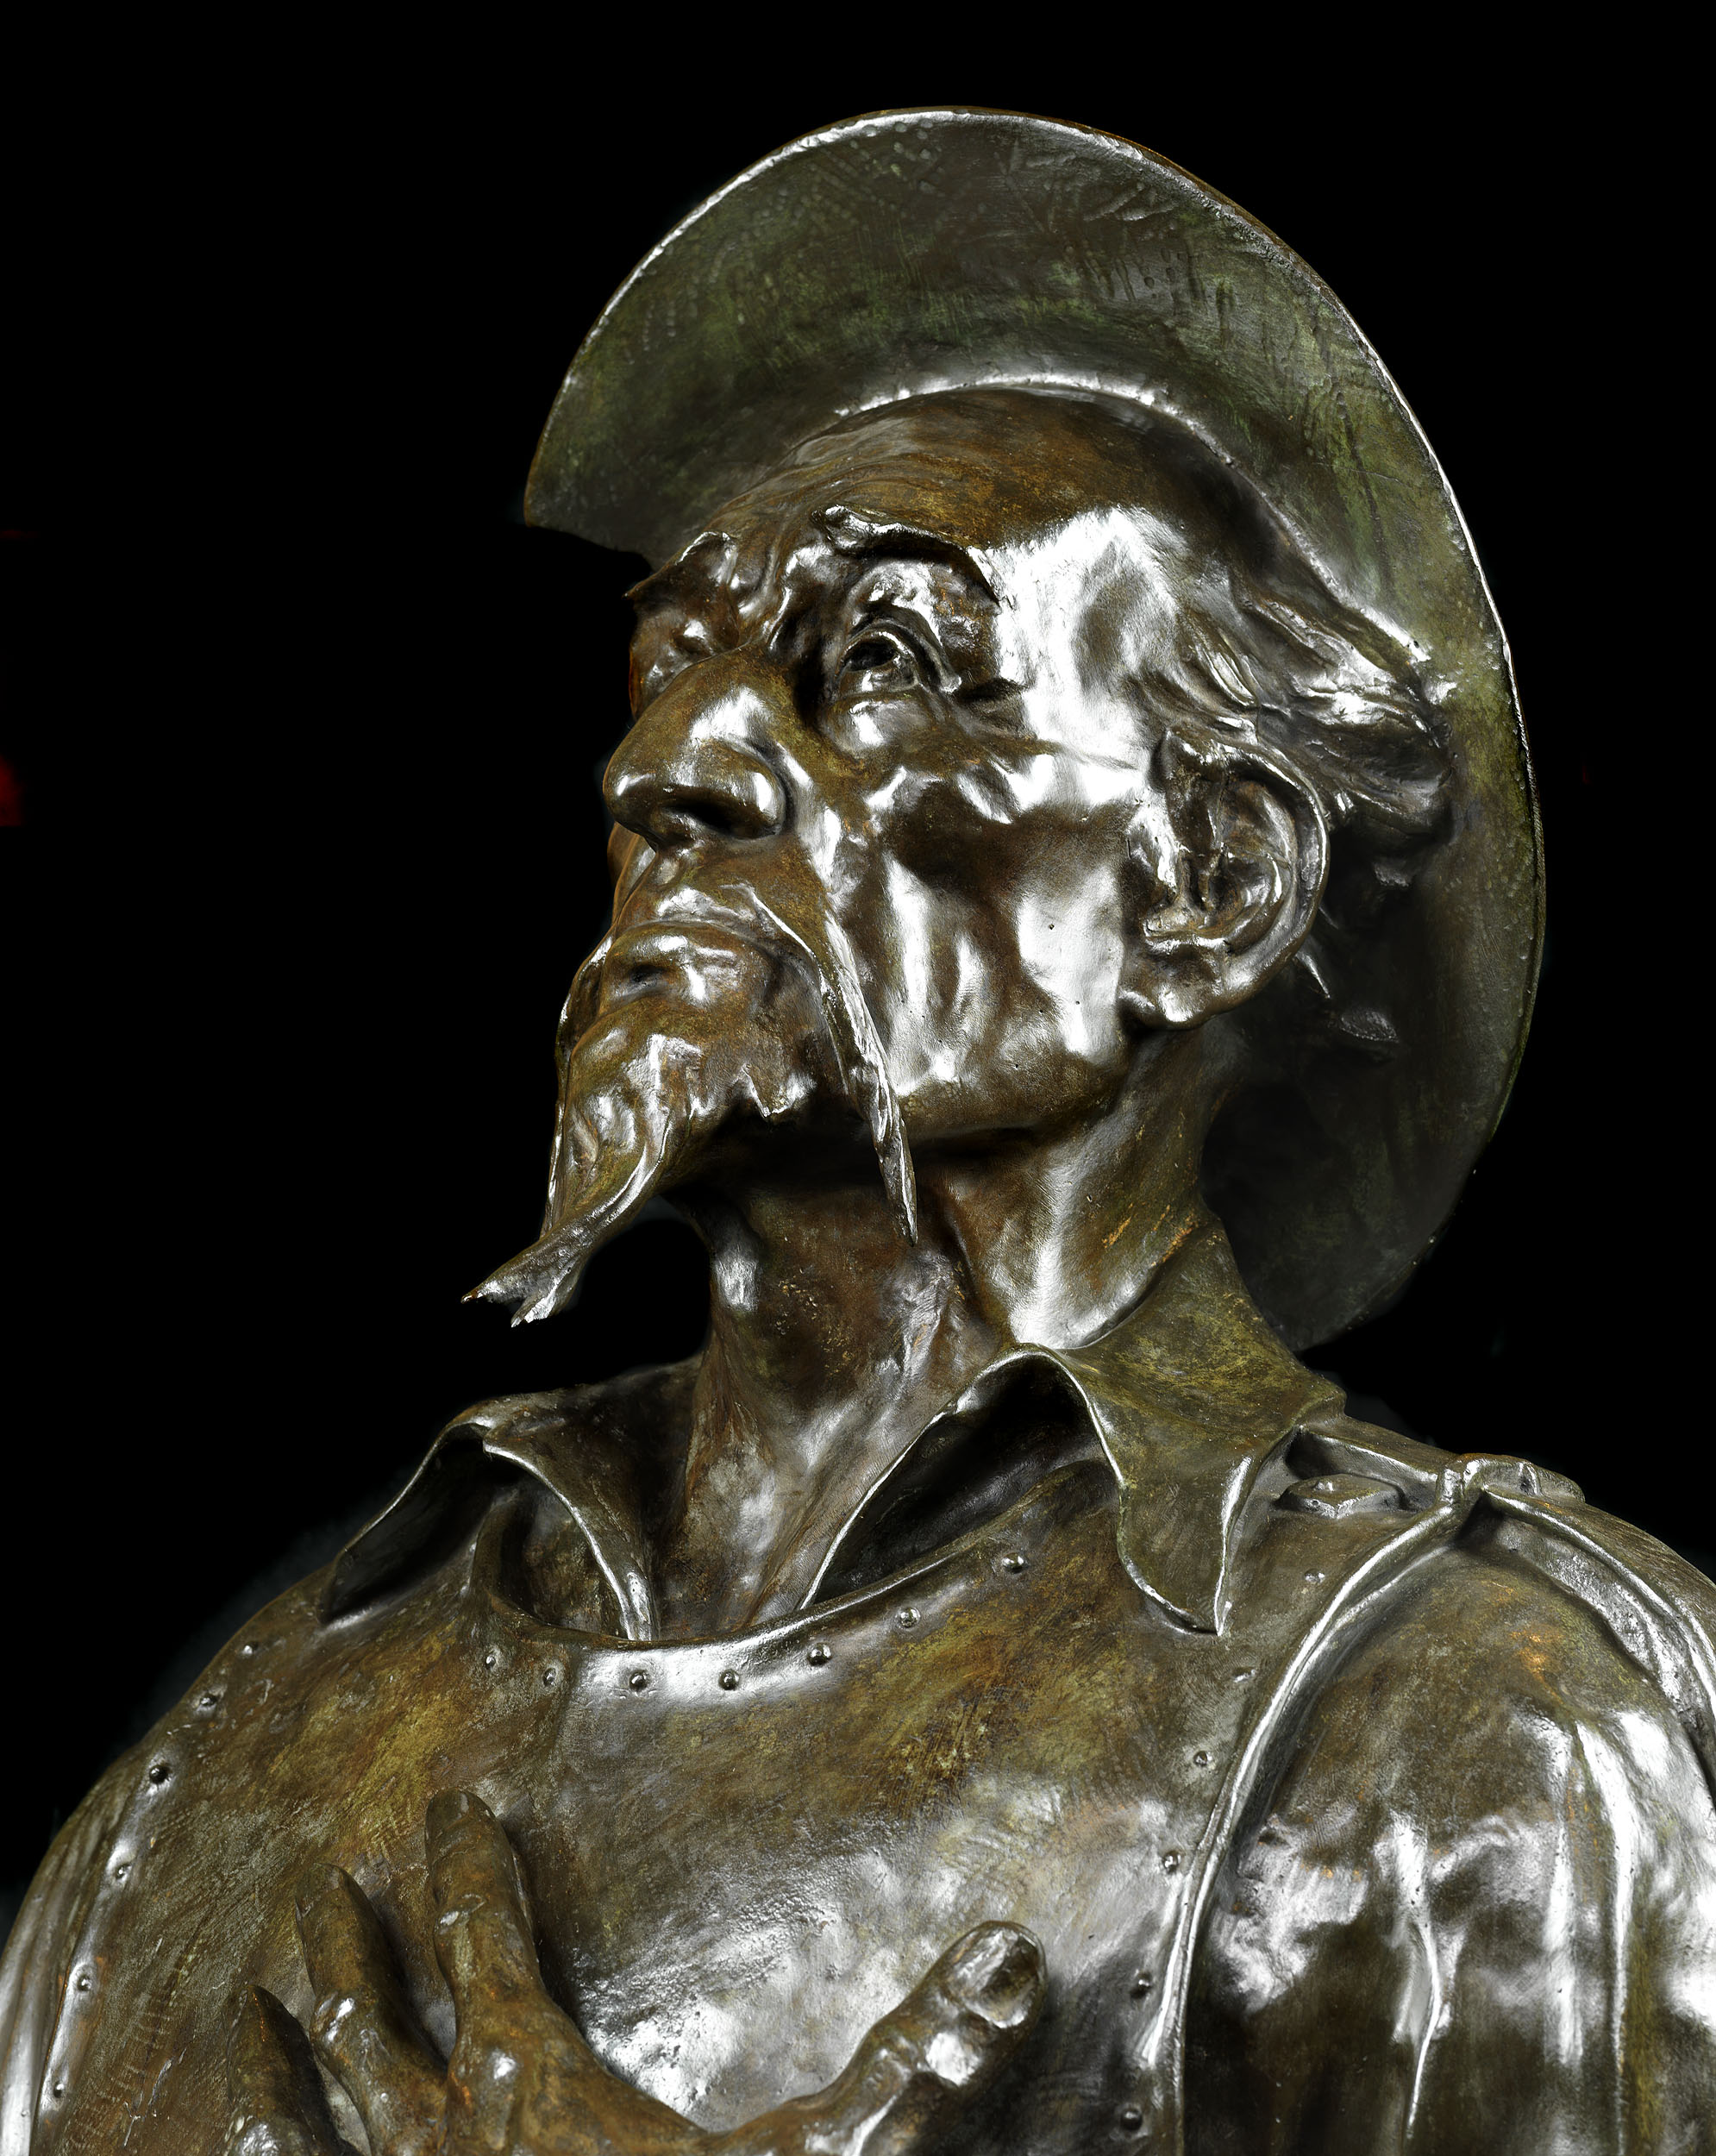 A Bronze Bust of Don Quixote of La Mancha
